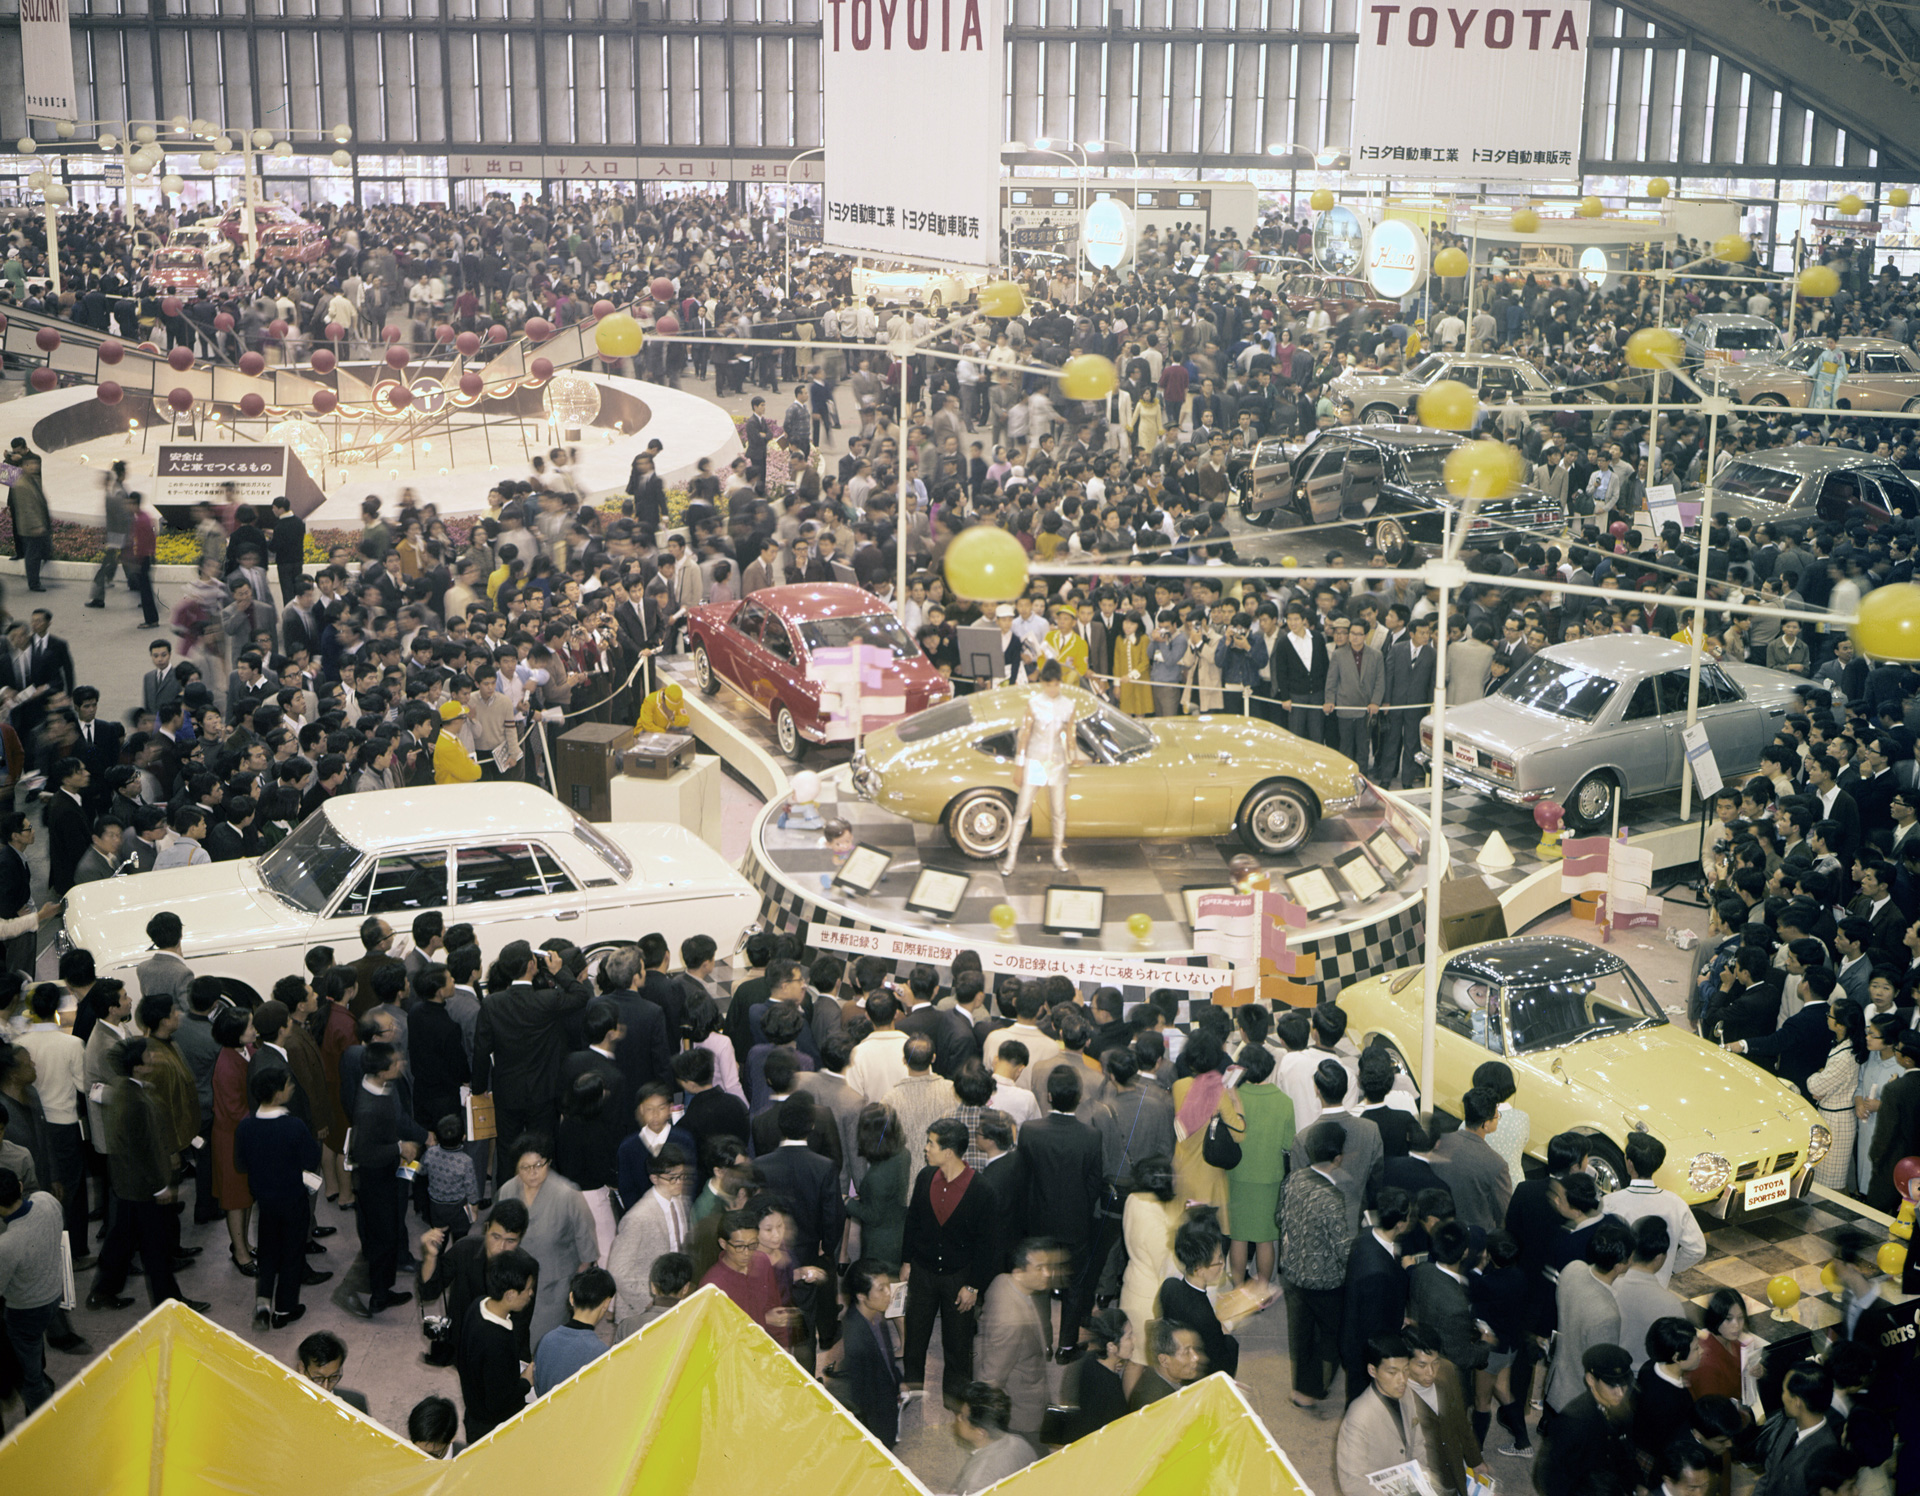 1967年 トヨタ自動車株式会社 公式企業サイト